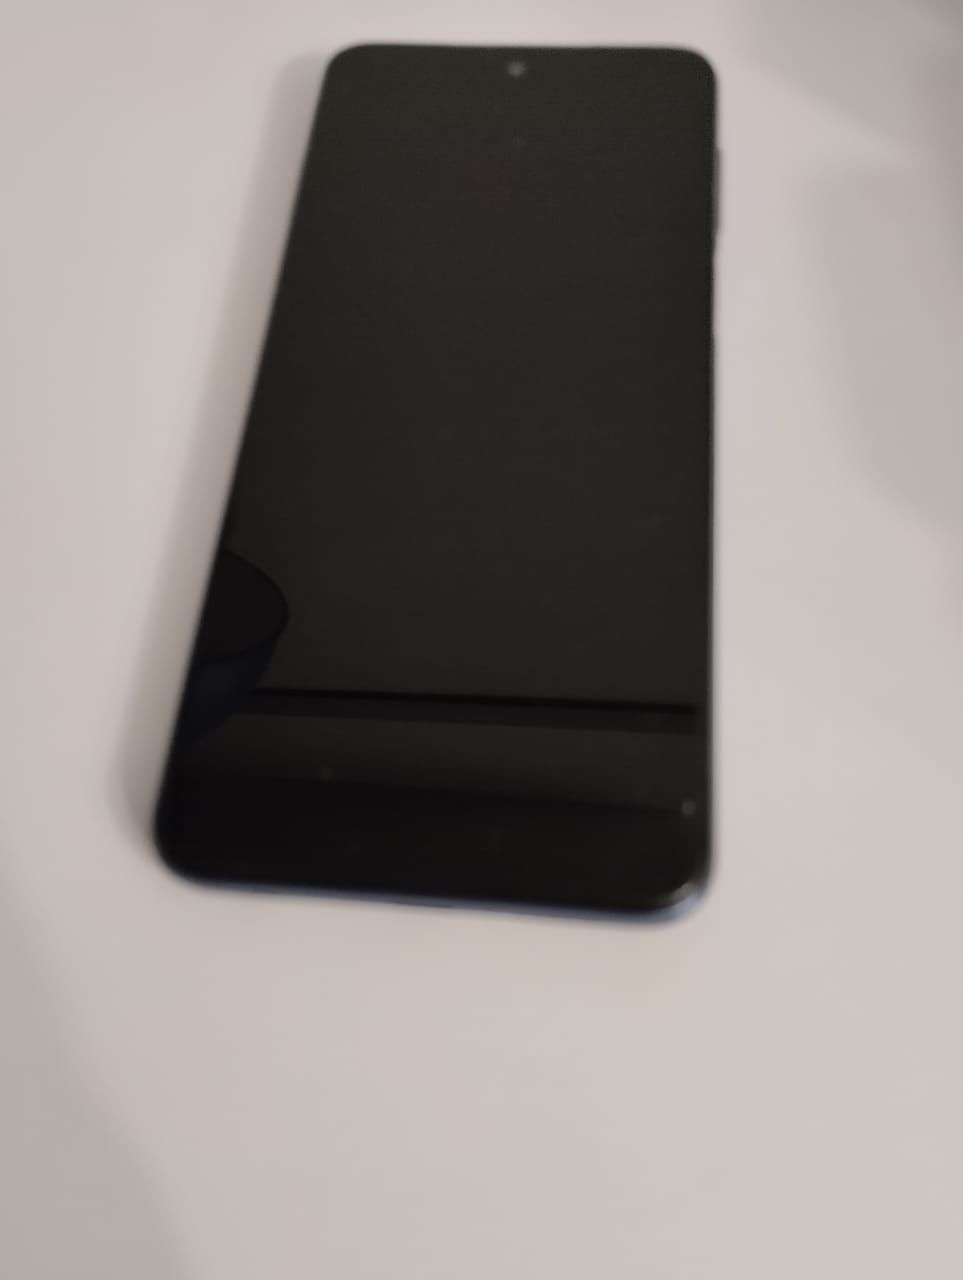 Redmi Note 9 Pro
64 гб, хорошее состояние, без внешних повреждений, в